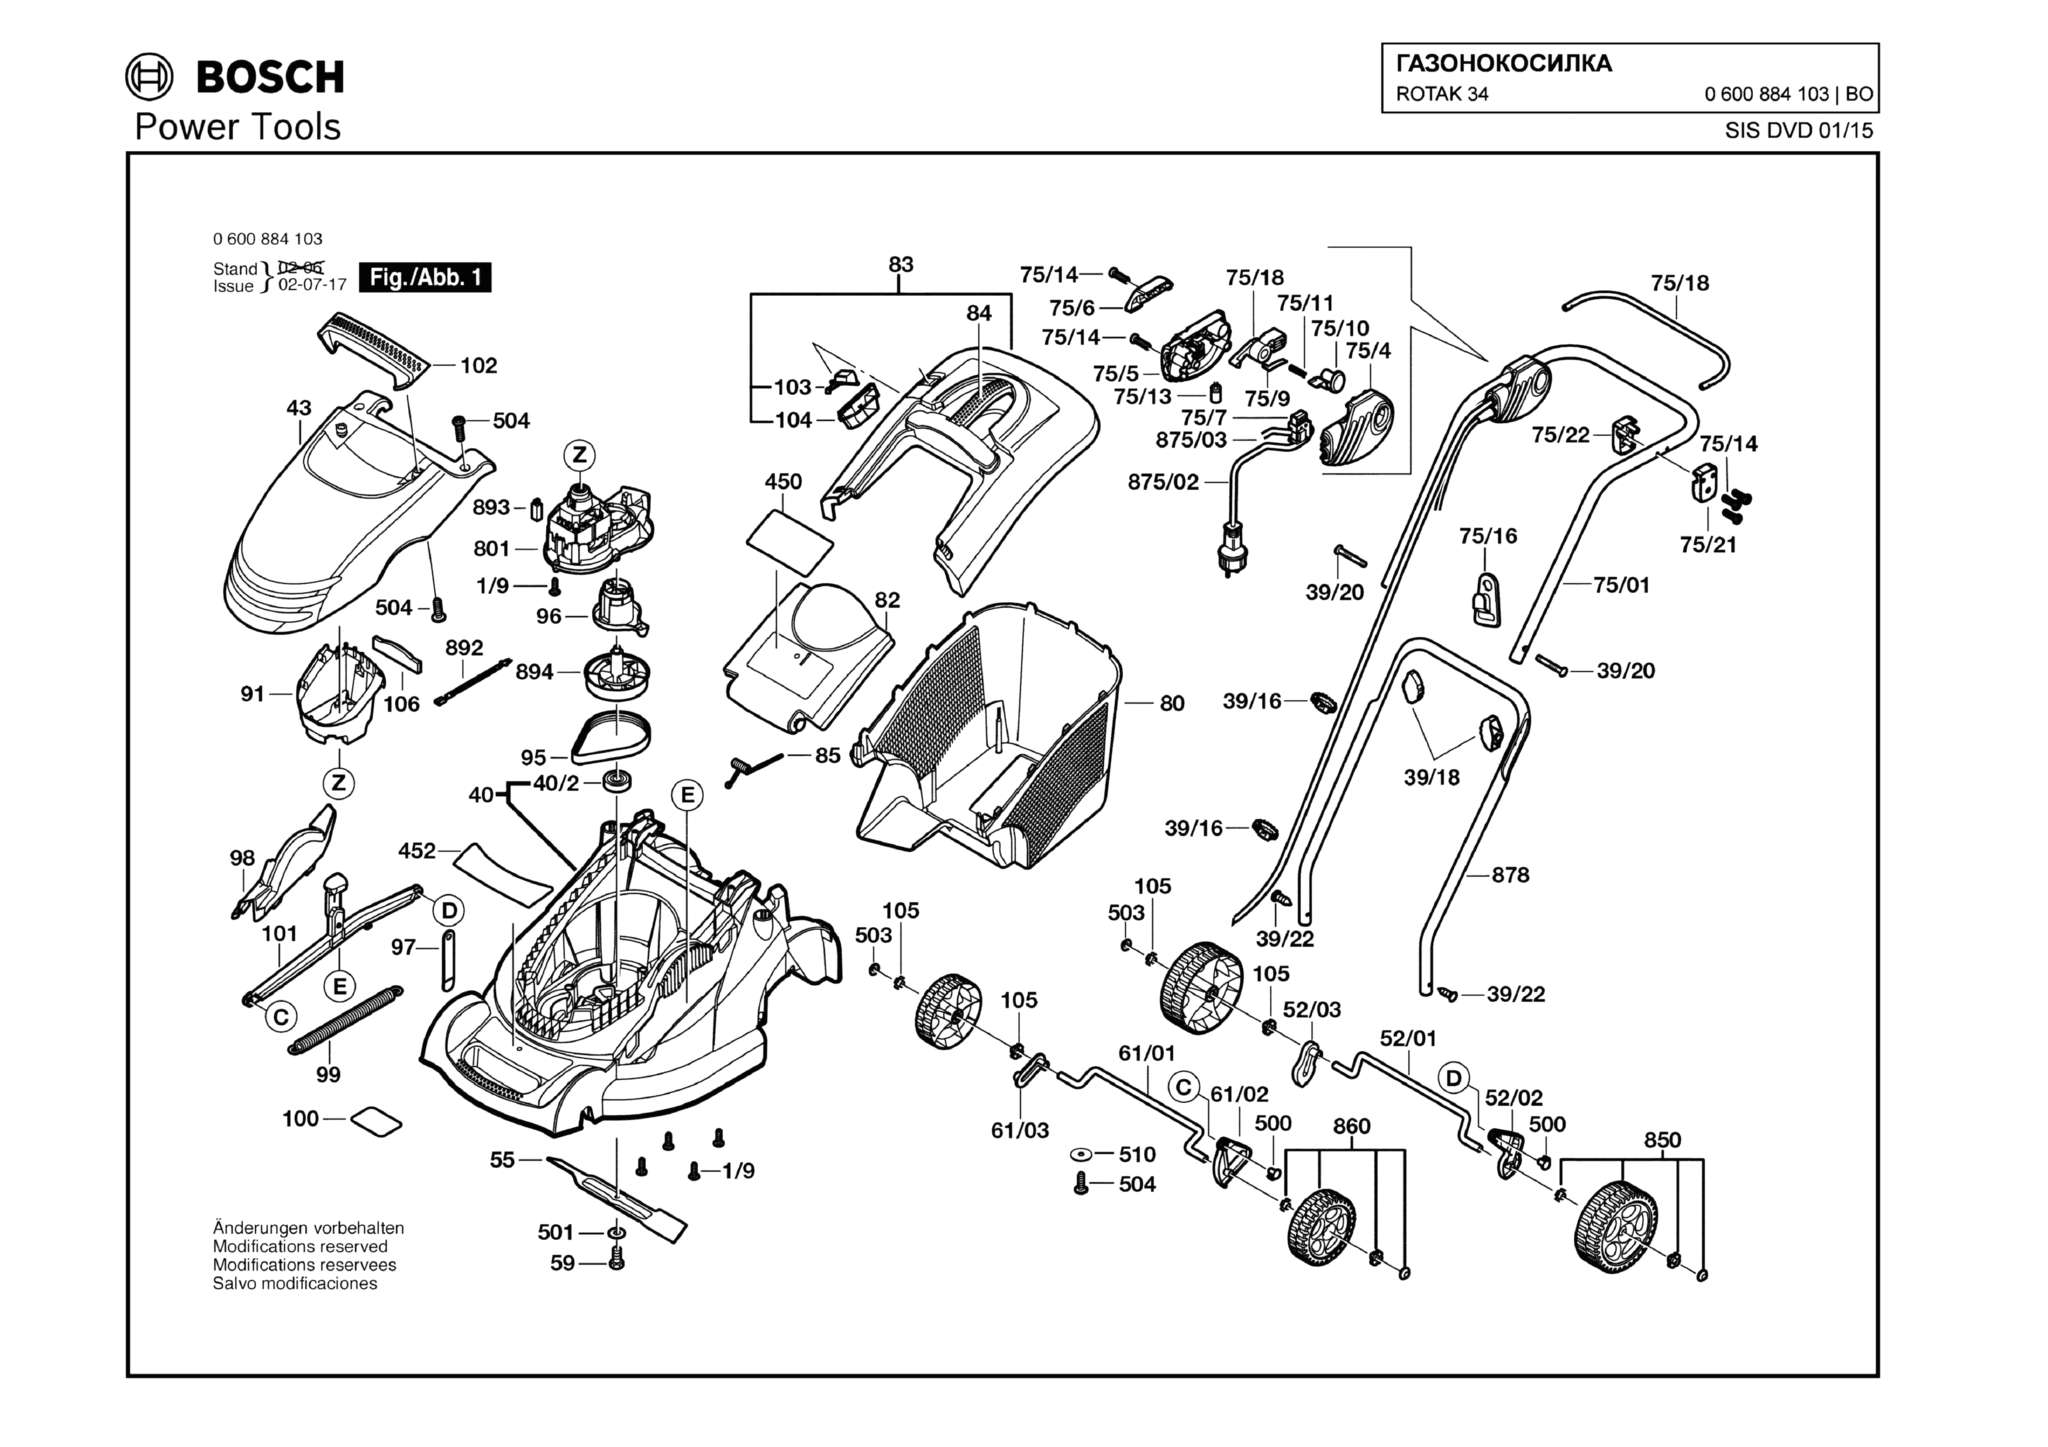 Запчасти, схема и деталировка Bosch ROTAK 34 (ТИП 0600884103)